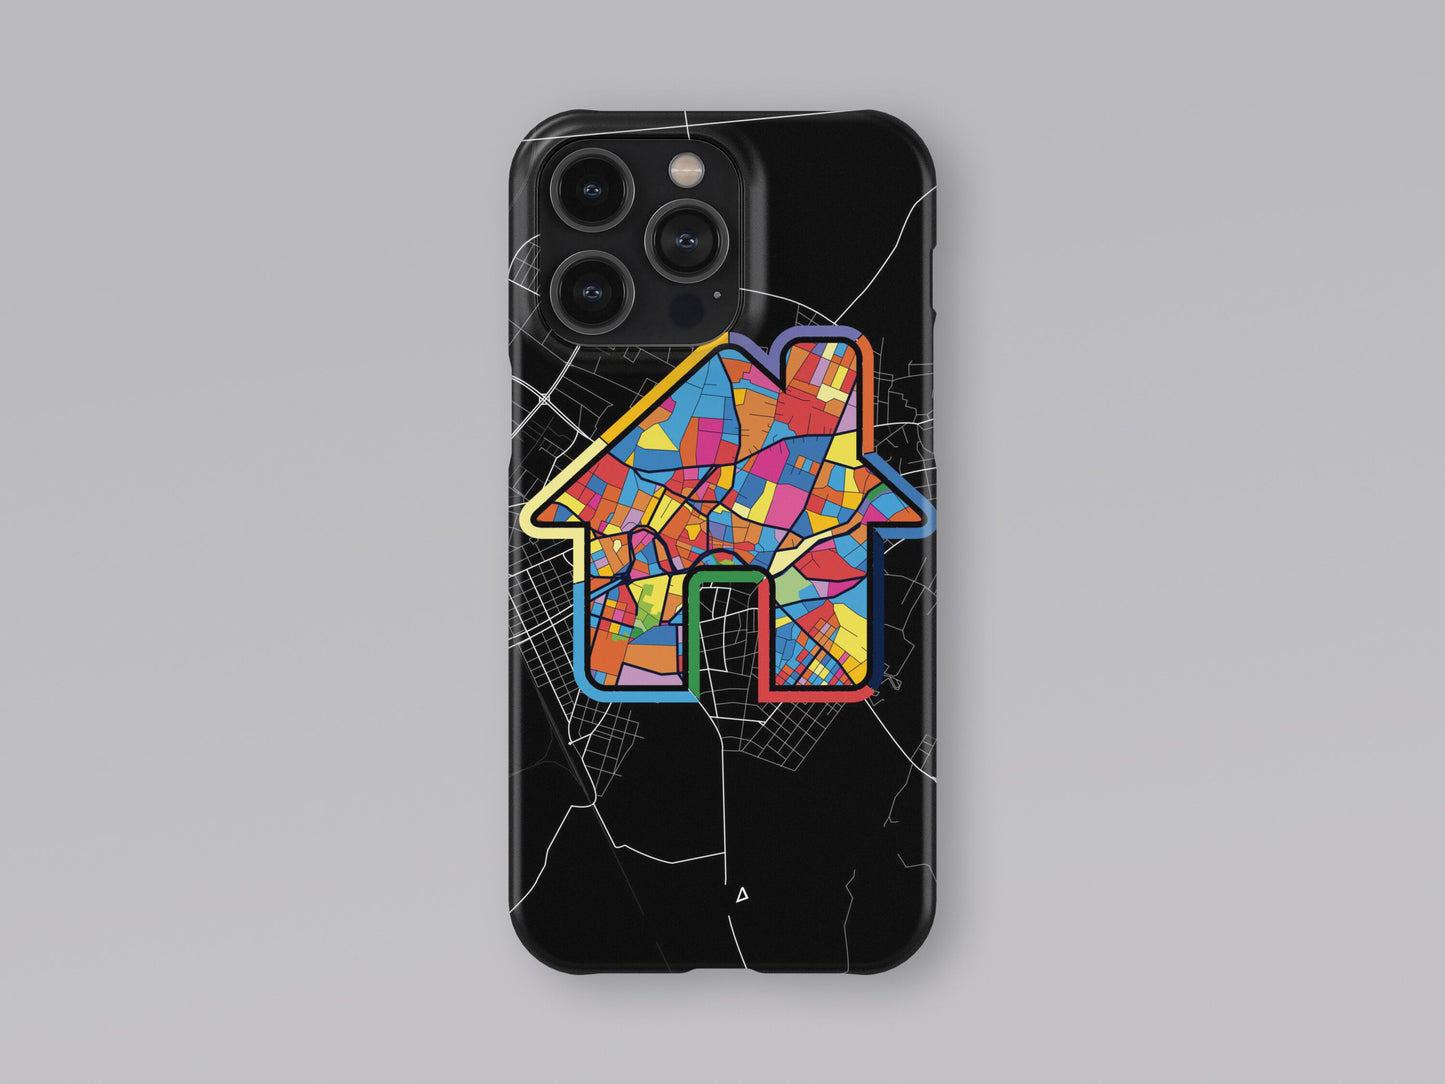 Κομοτηνη Ελλαδα slim phone case with colorful icon. Birthday, wedding or housewarming gift. Couple match cases. 3